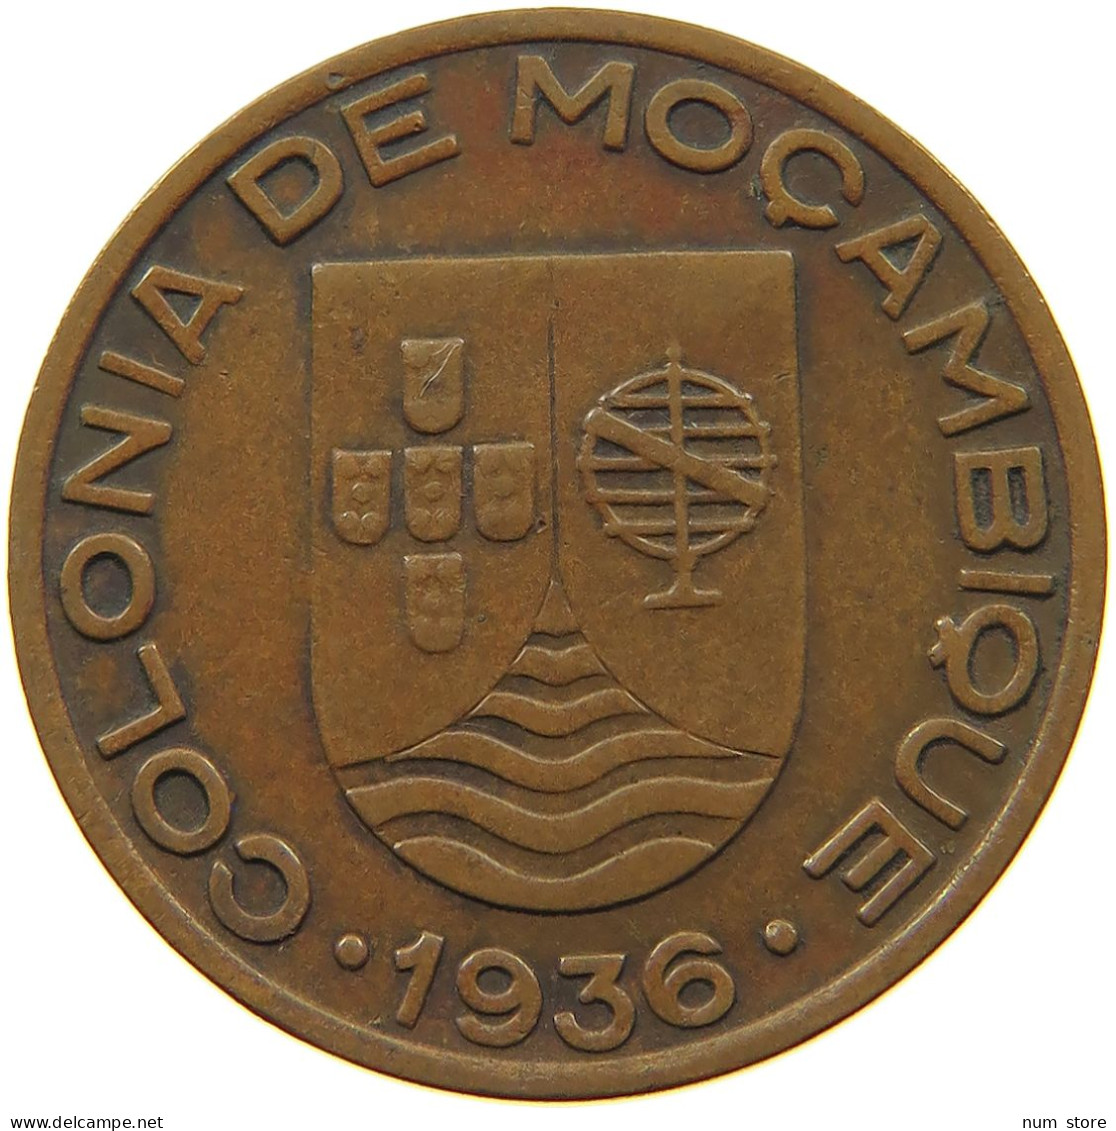 MOZAMBIQUE 20 CENTAVOS 1936  #a036 0829 - Mozambique